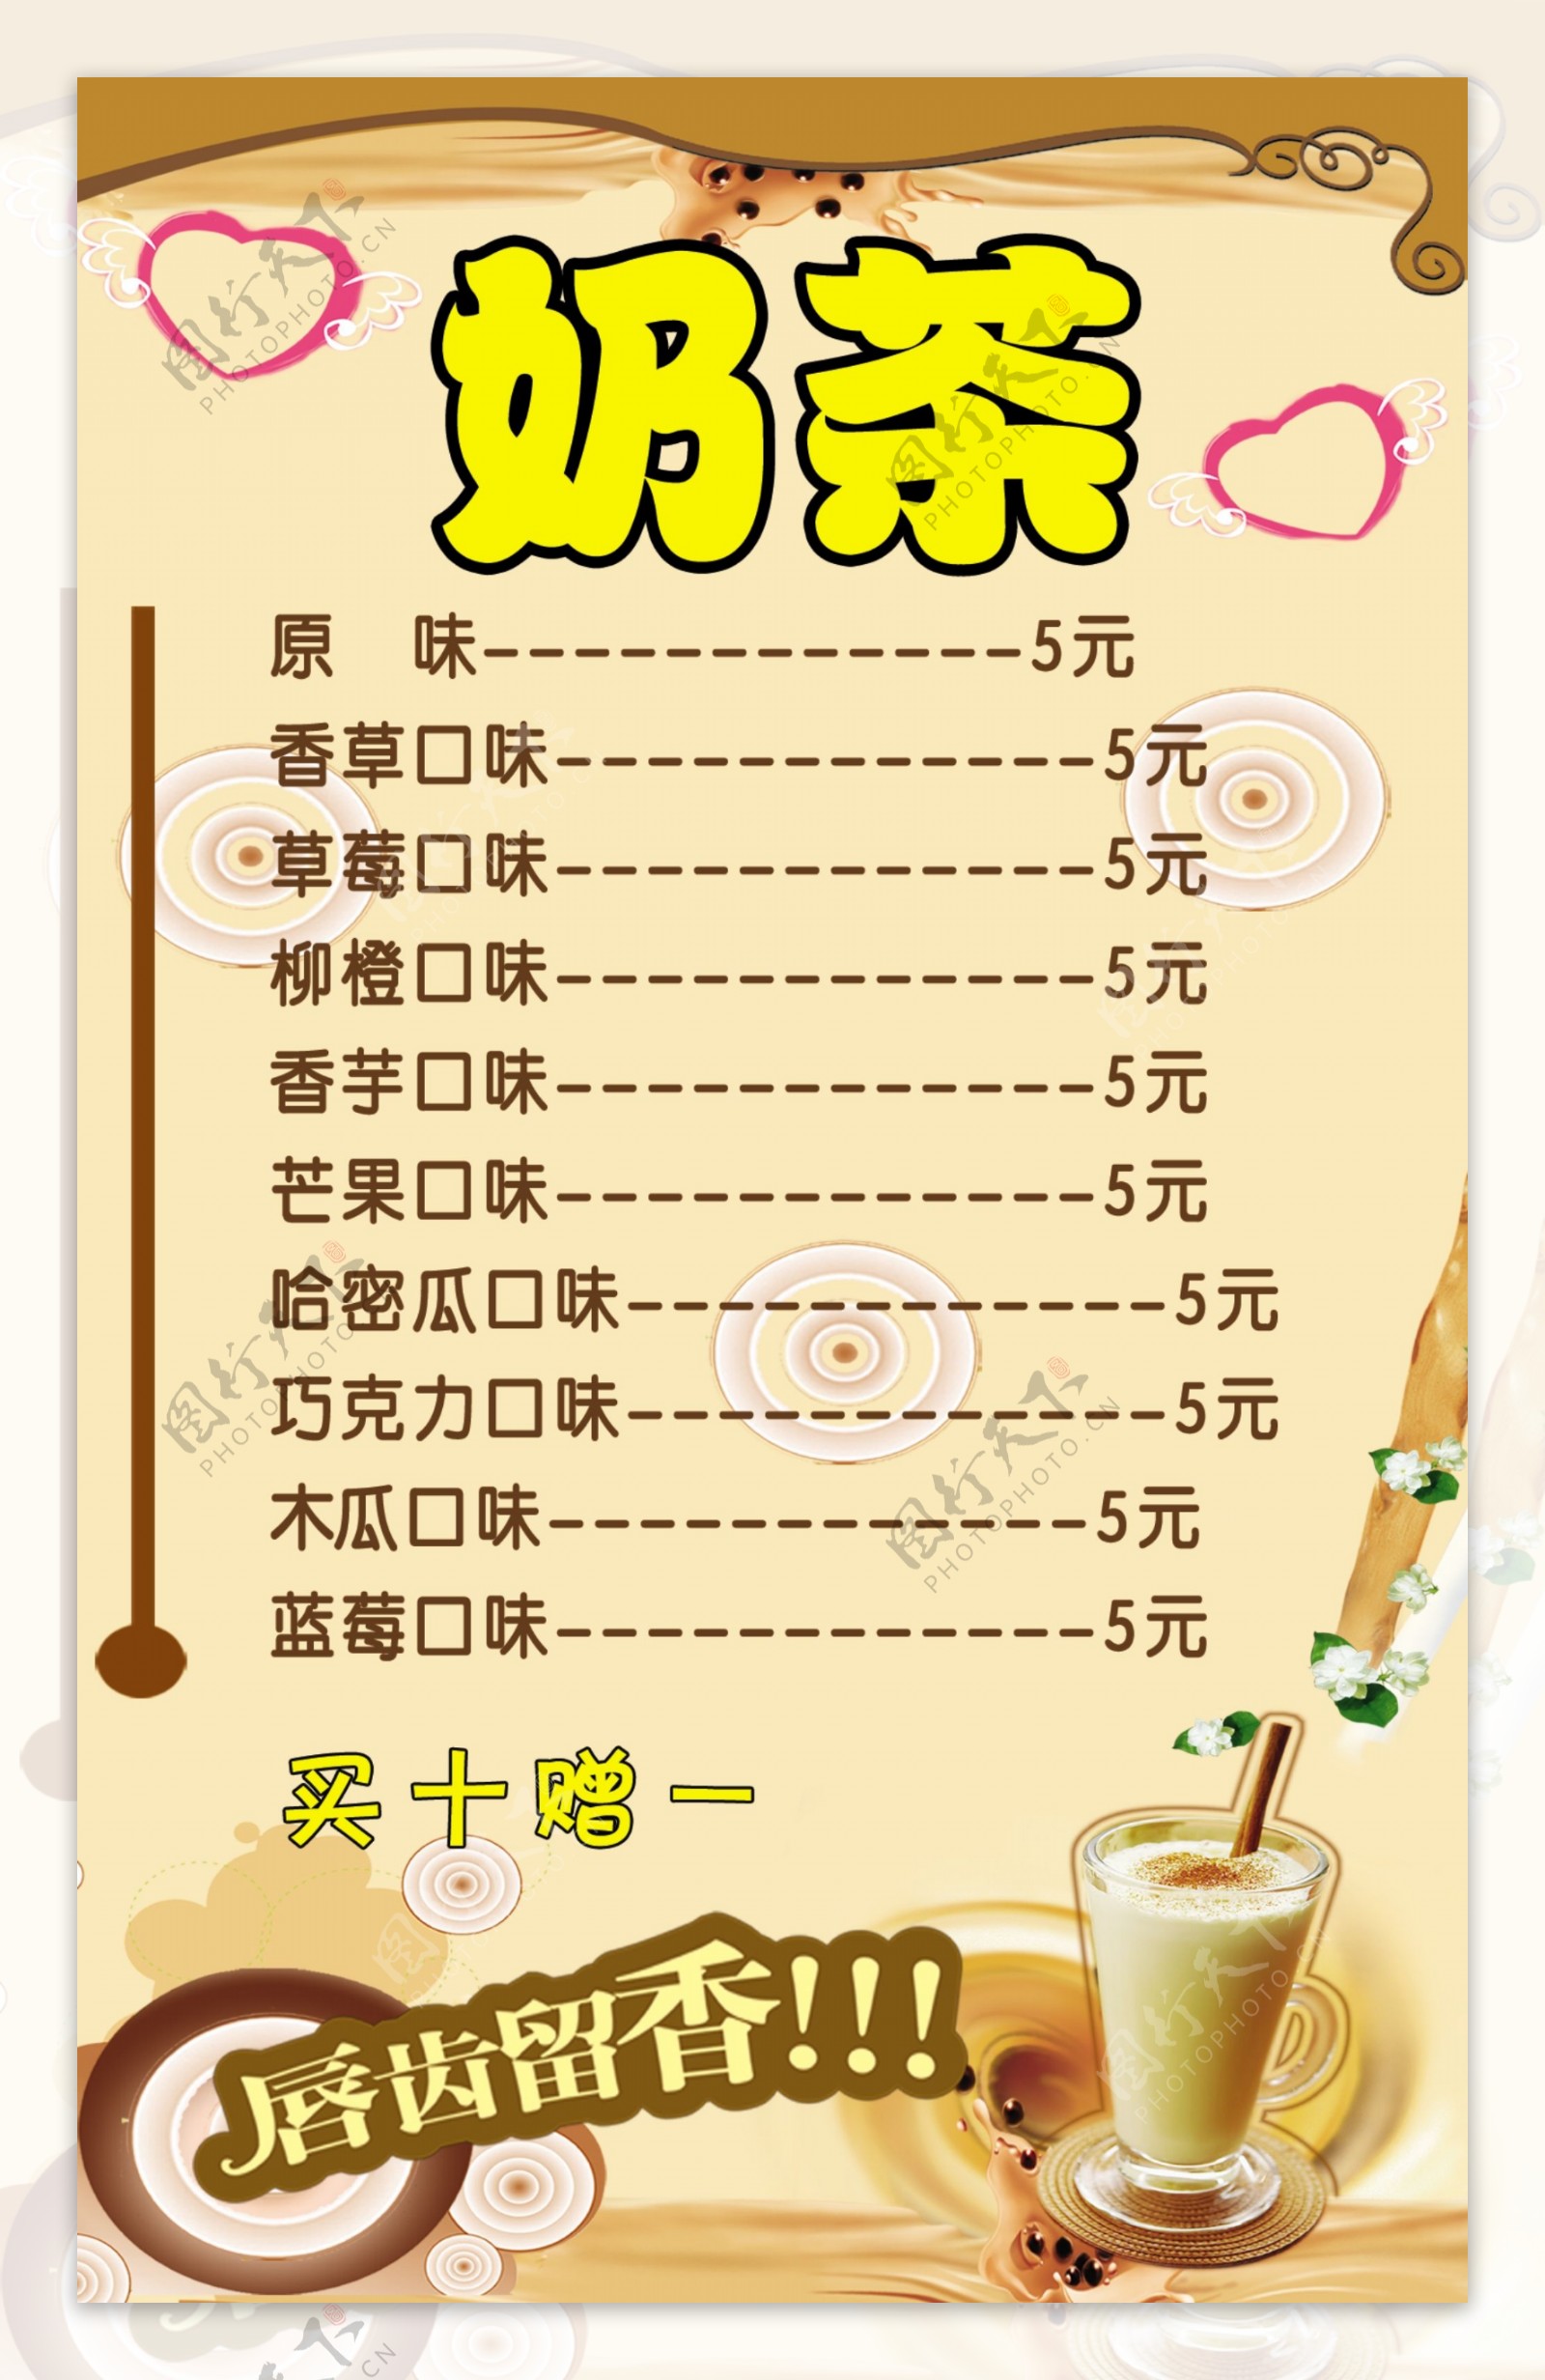 【奶茶价格表】奶茶价格表平面模板_奶茶价格表素材下载-稿定素材